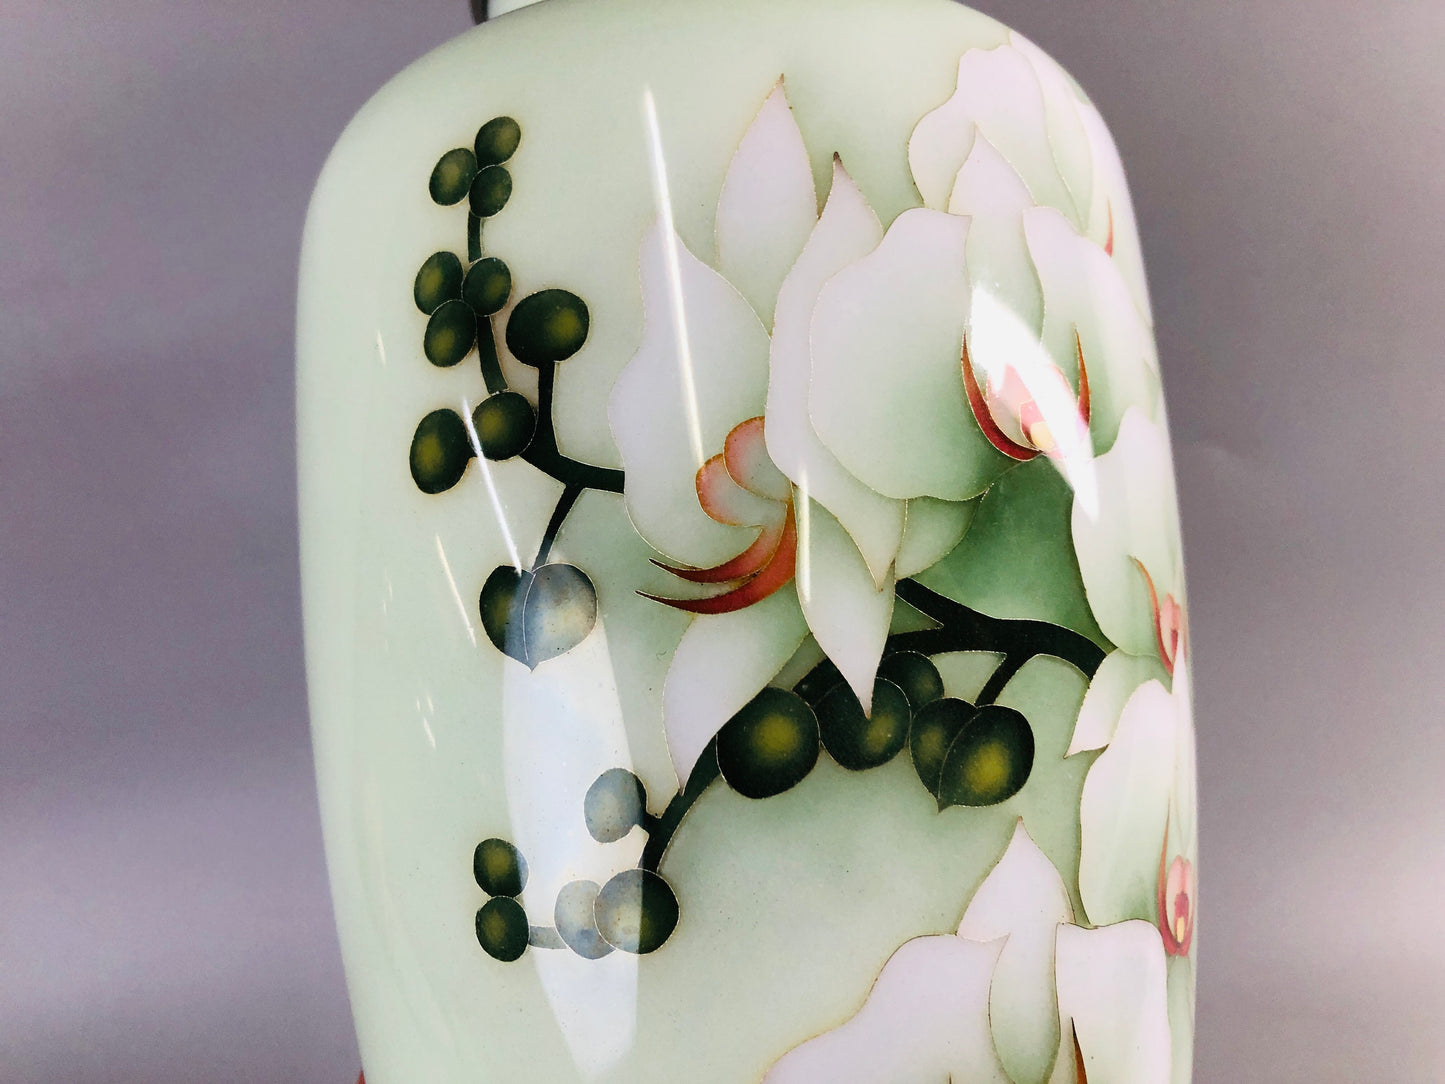 Y6947 「VIDEO] FLOWER VASE Cloisonne signed box Japan ikebana floral arrangement interior